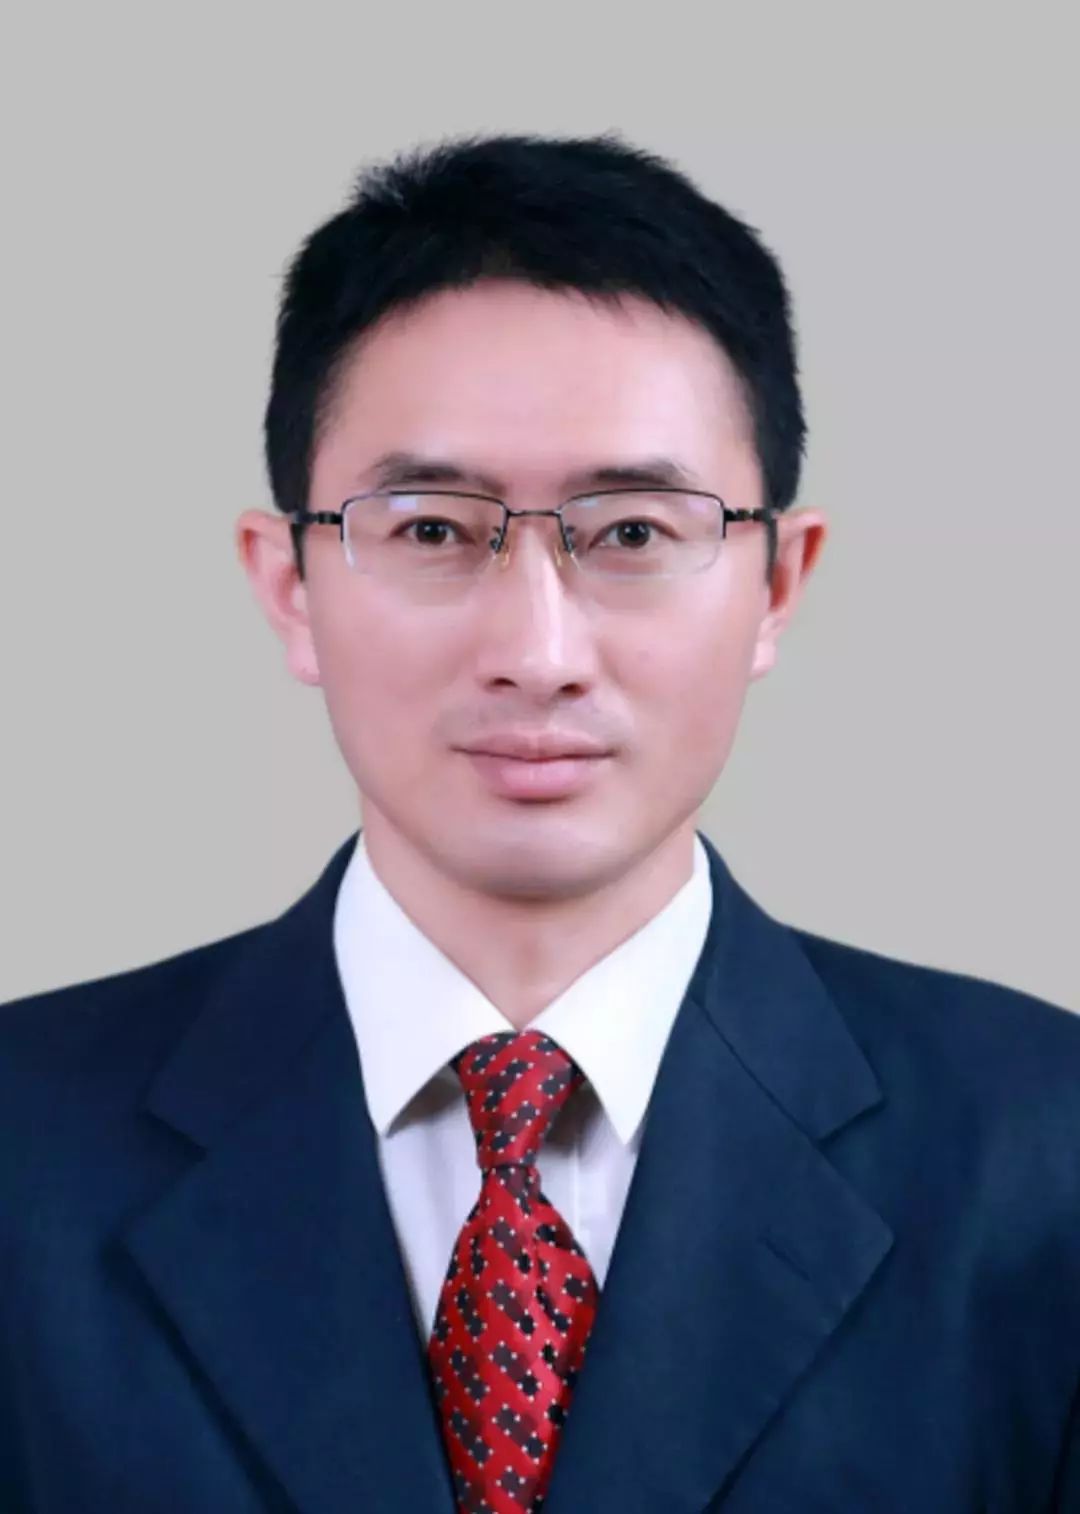 朱开荣,男,汉族,1969年11月生,在职公共管理硕士,中共党员,1991年7月